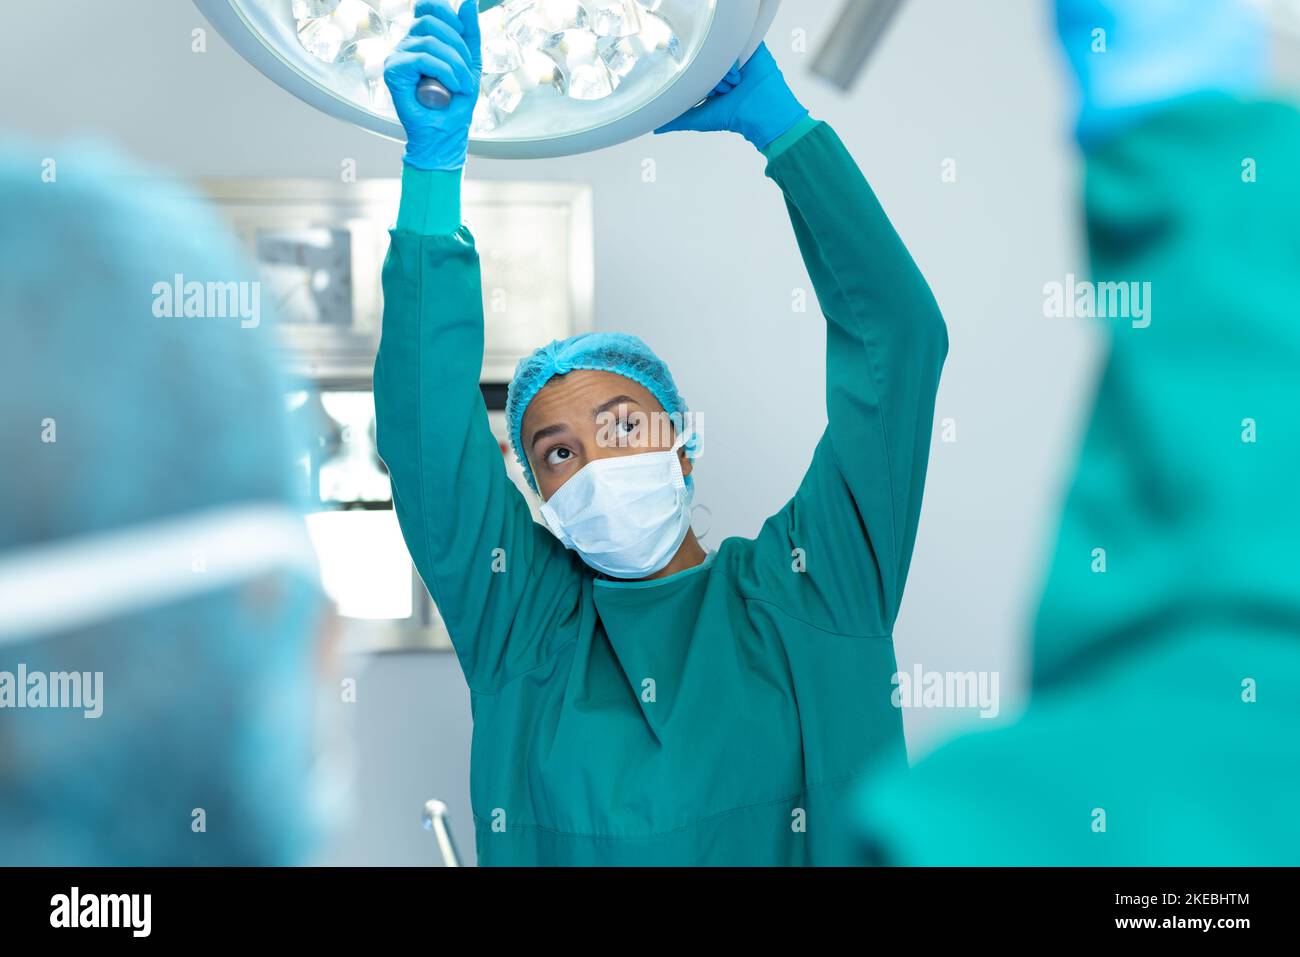 Femme chirurgien biracial ajustant les lumières dans le bloc opératoire pour l'opération Banque D'Images